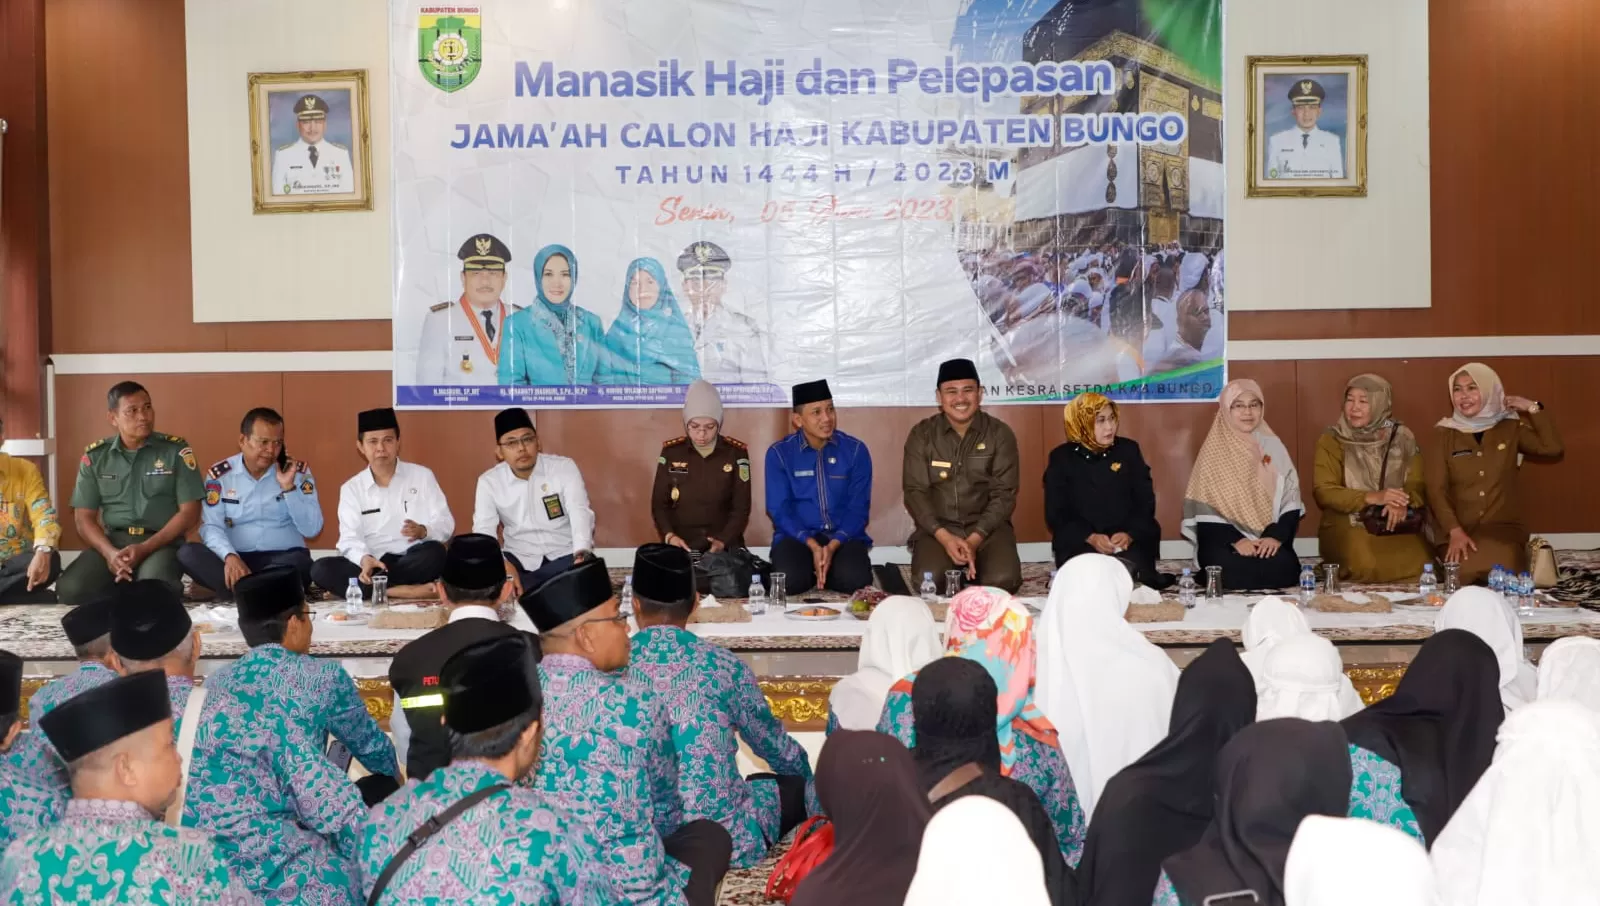 Suasana pelepasan calon jamaah haji (CJH) asal Kabupaten Bungo (Metrojambi.com)